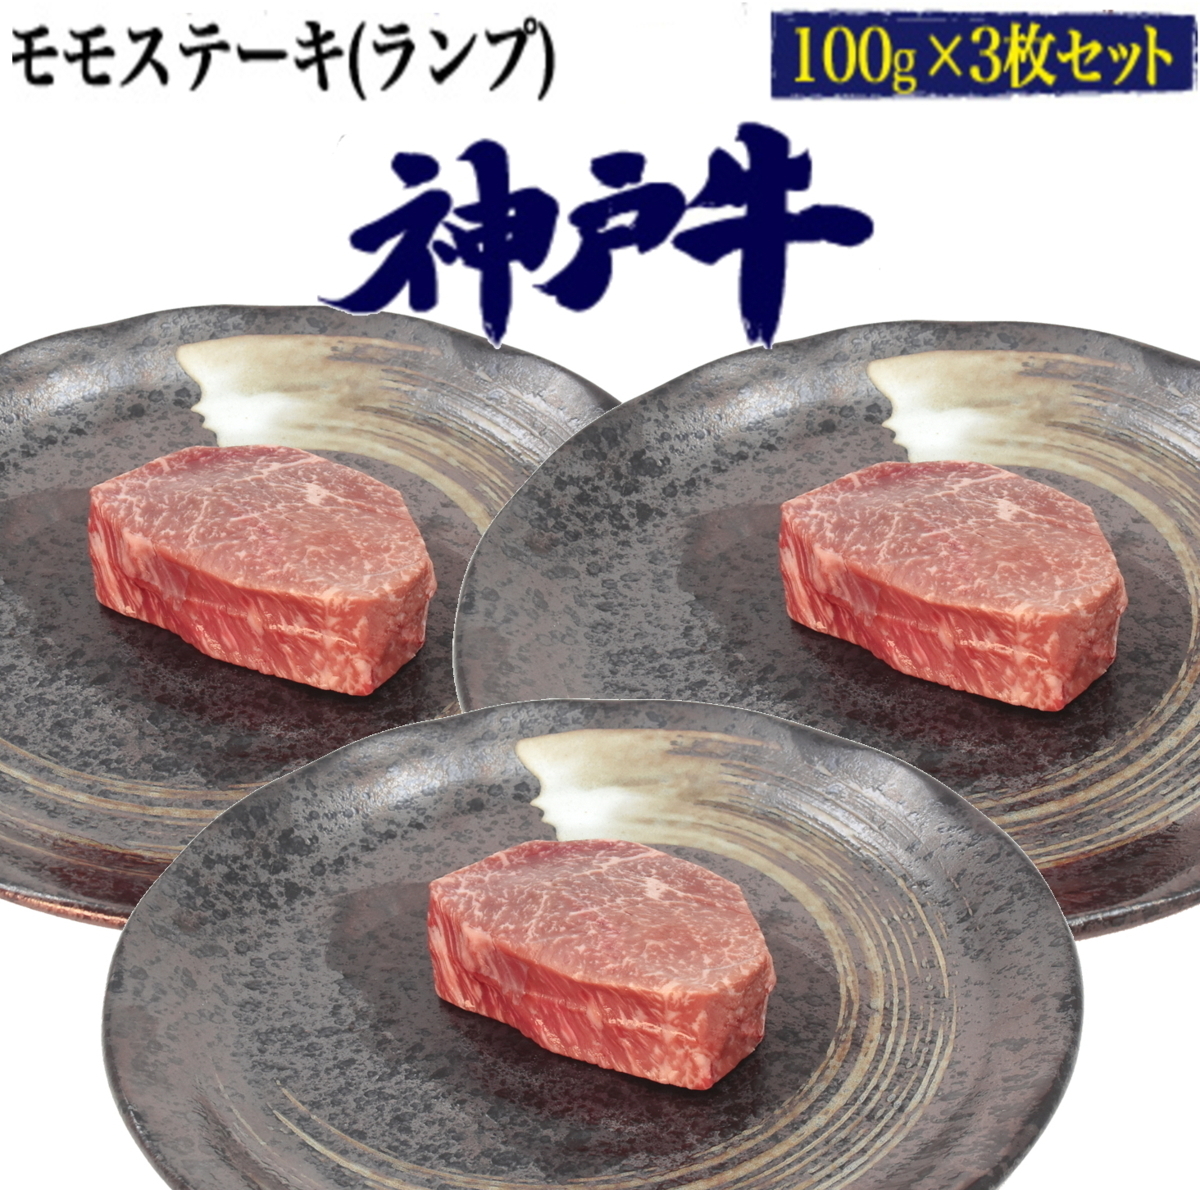 神戸牛 モモステーキ ランプ 300g(100g3枚セット)■A5ランク ステーキ肉 赤身肉 モモ肉 証明書付き 牛肉 贈答/ギフト/熨斗対応■冷凍配送_こちらは 神戸牛 ランプ の出品ページです